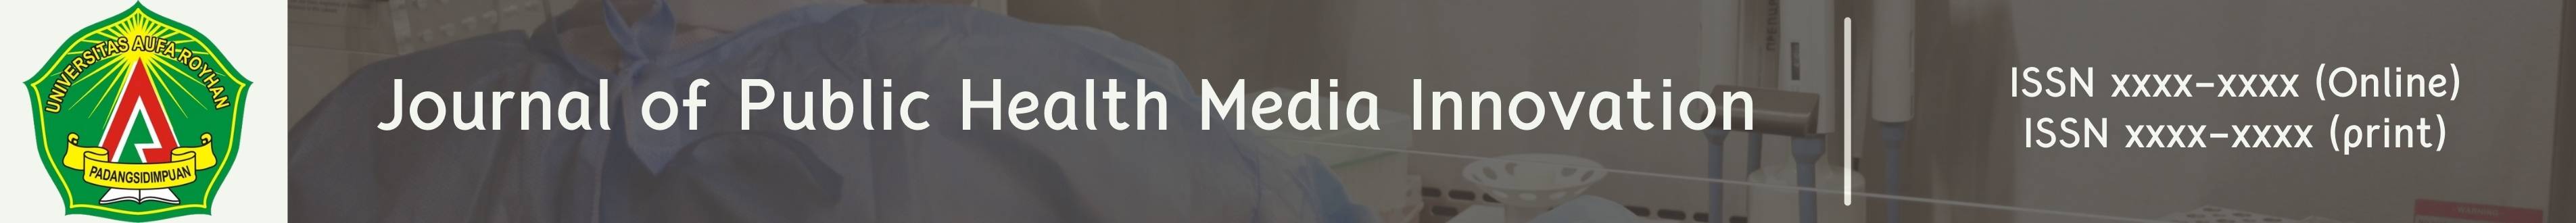 MediaInnovation_logo